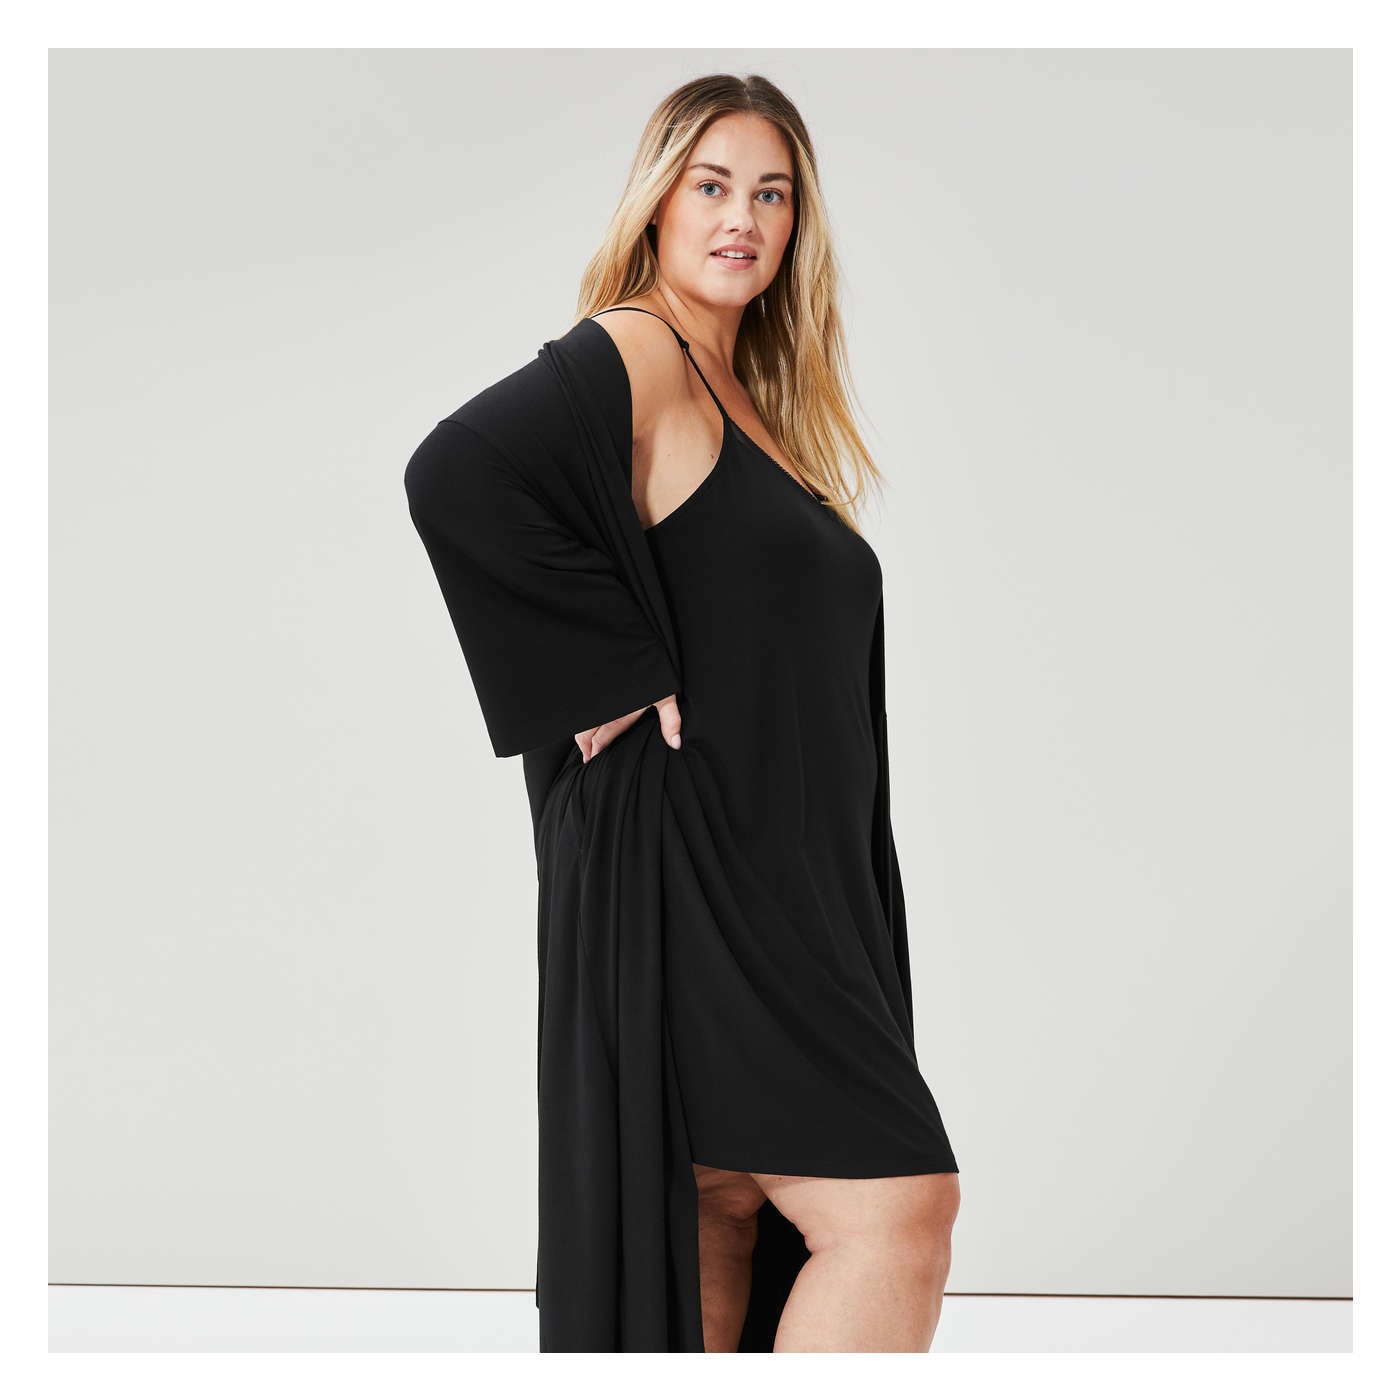 Buy Women's Robes Black Nightwear Online